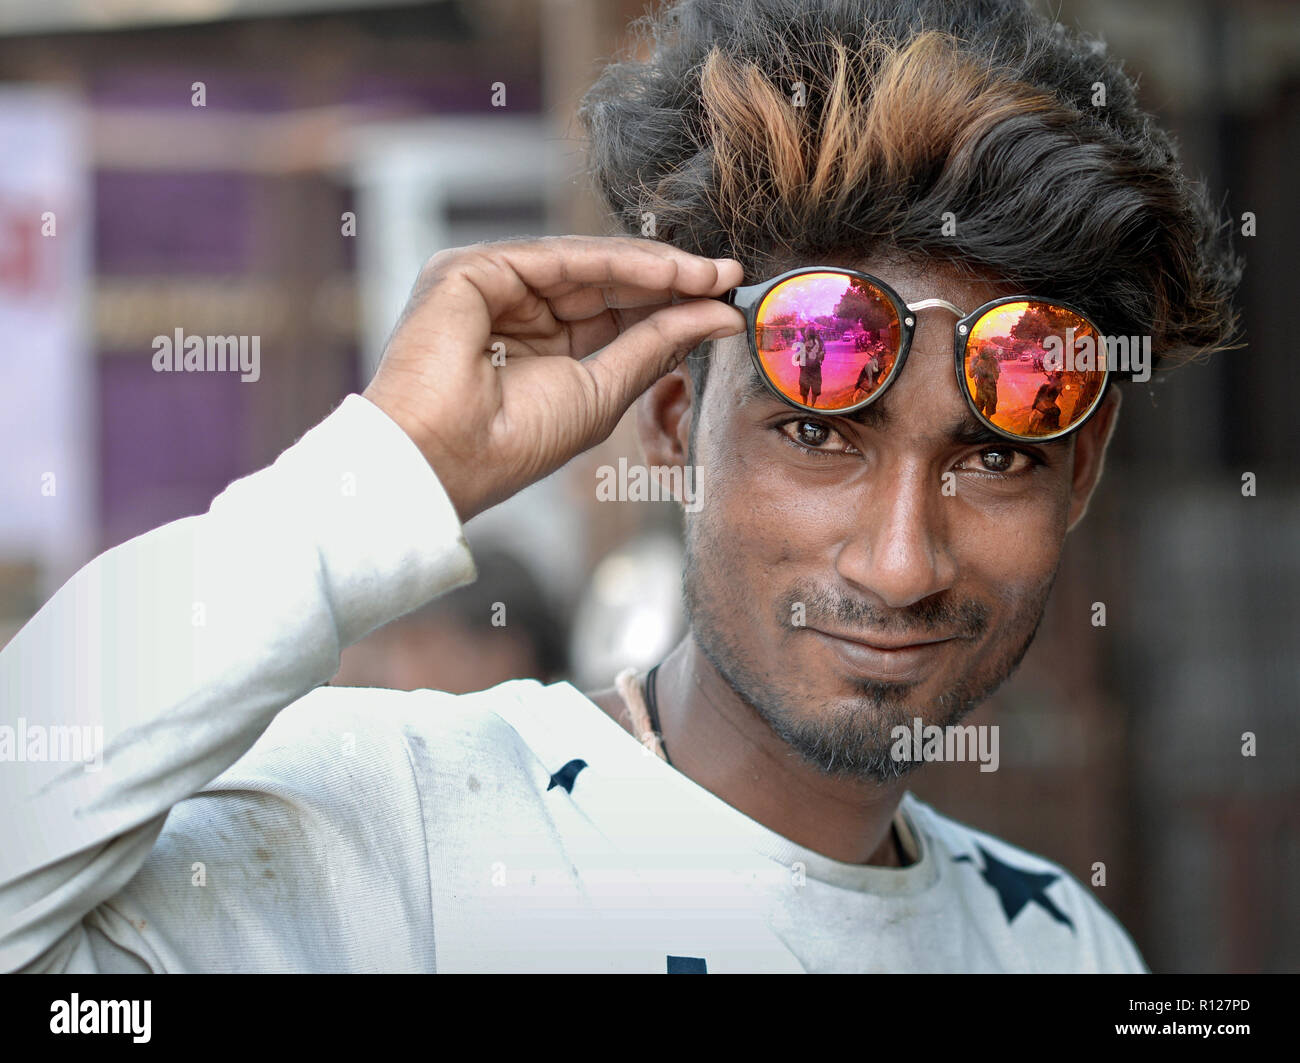 Beau jeune homme lunettes miroir Rajasthani détient avec sa main droite sur son front et regarde dans la caméra. Banque D'Images